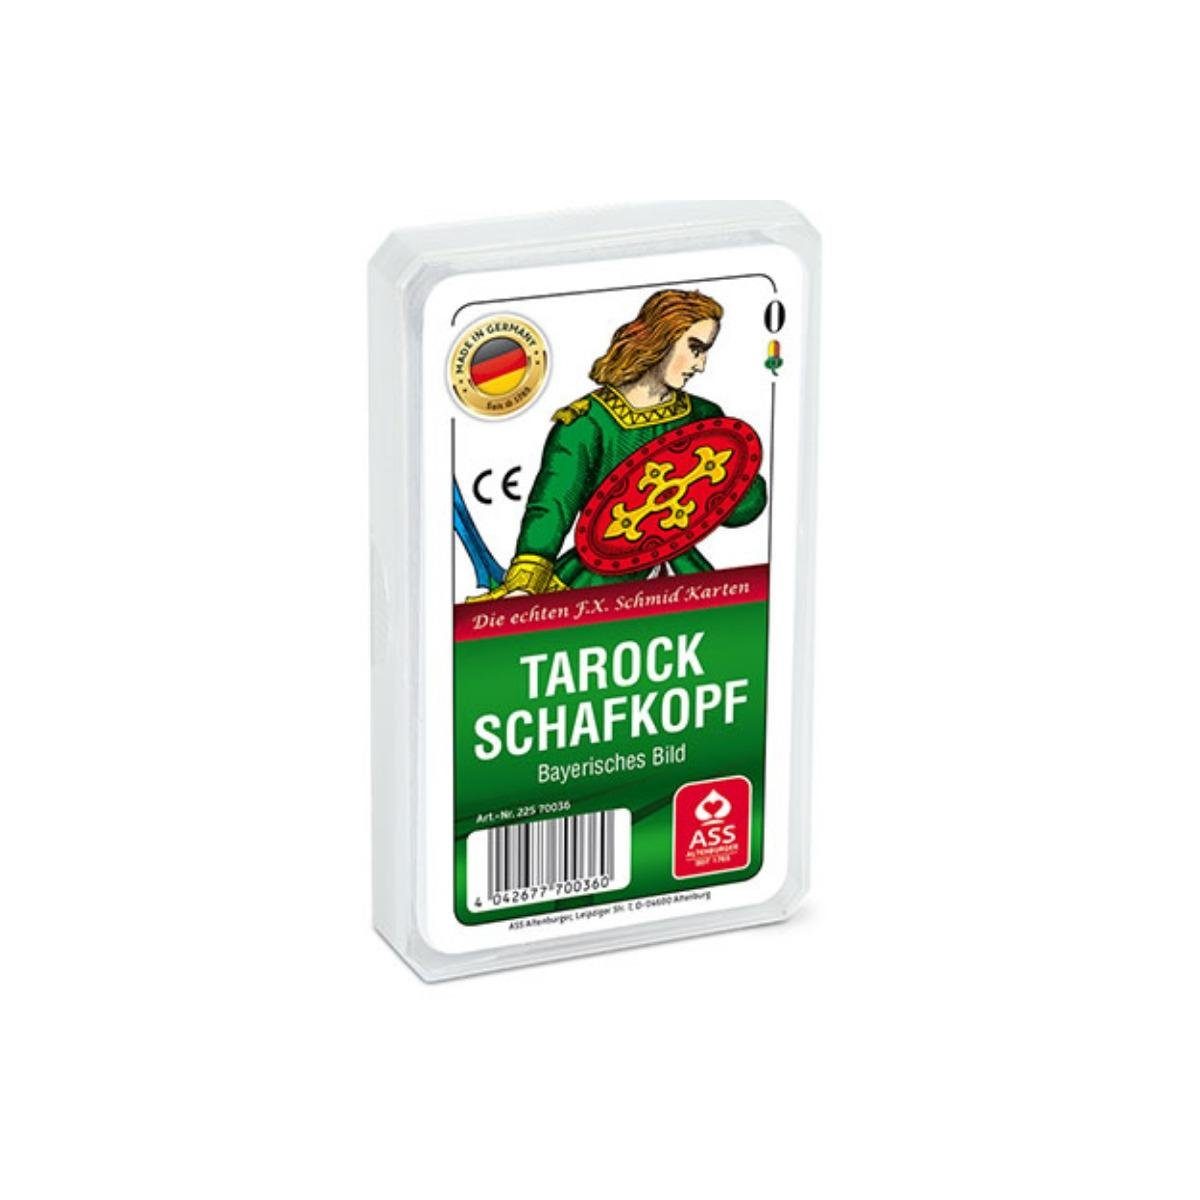 Spiel, 22570036 - Bayerisches Schafkopf/Tarock, Bild (Kunststoffetui) Familienspiel Altenburger ASS